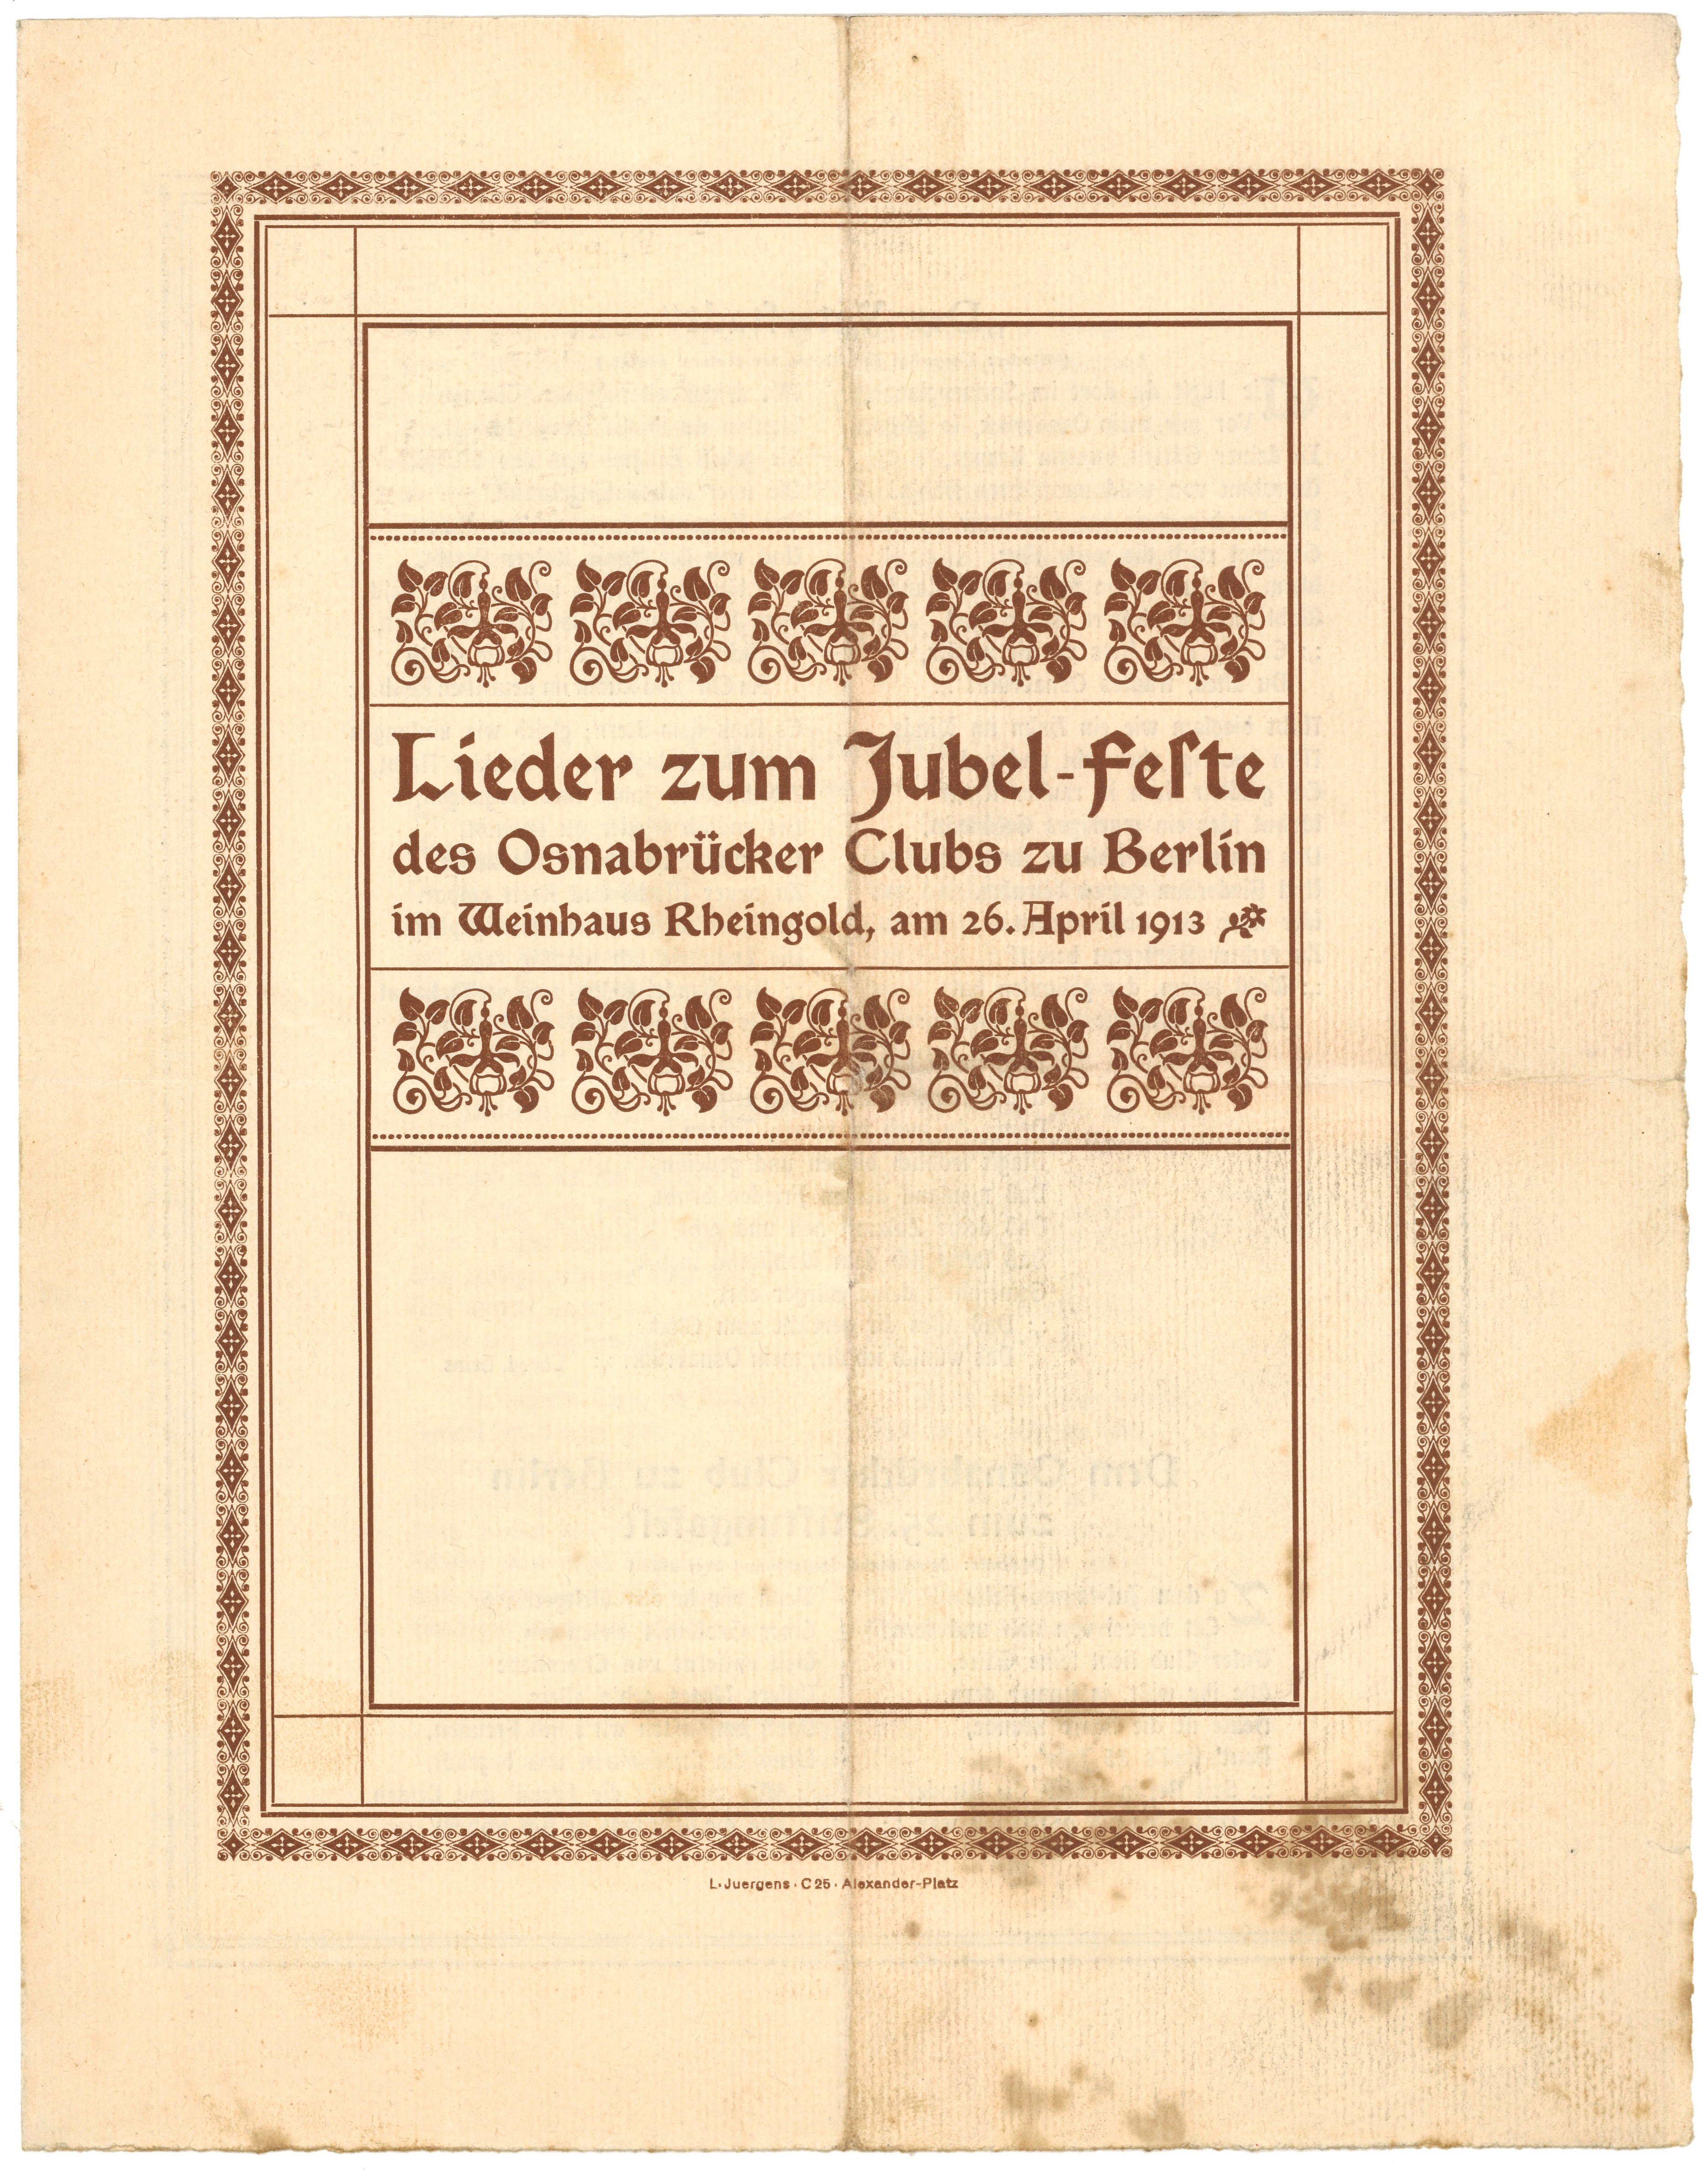 Lieder zum Jubel-Feste des Osnabrücker Clubs zu Berlin 1913 (Landesgeschichtliche Vereinigung für die Mark Brandenburg e.V., Archiv CC BY)